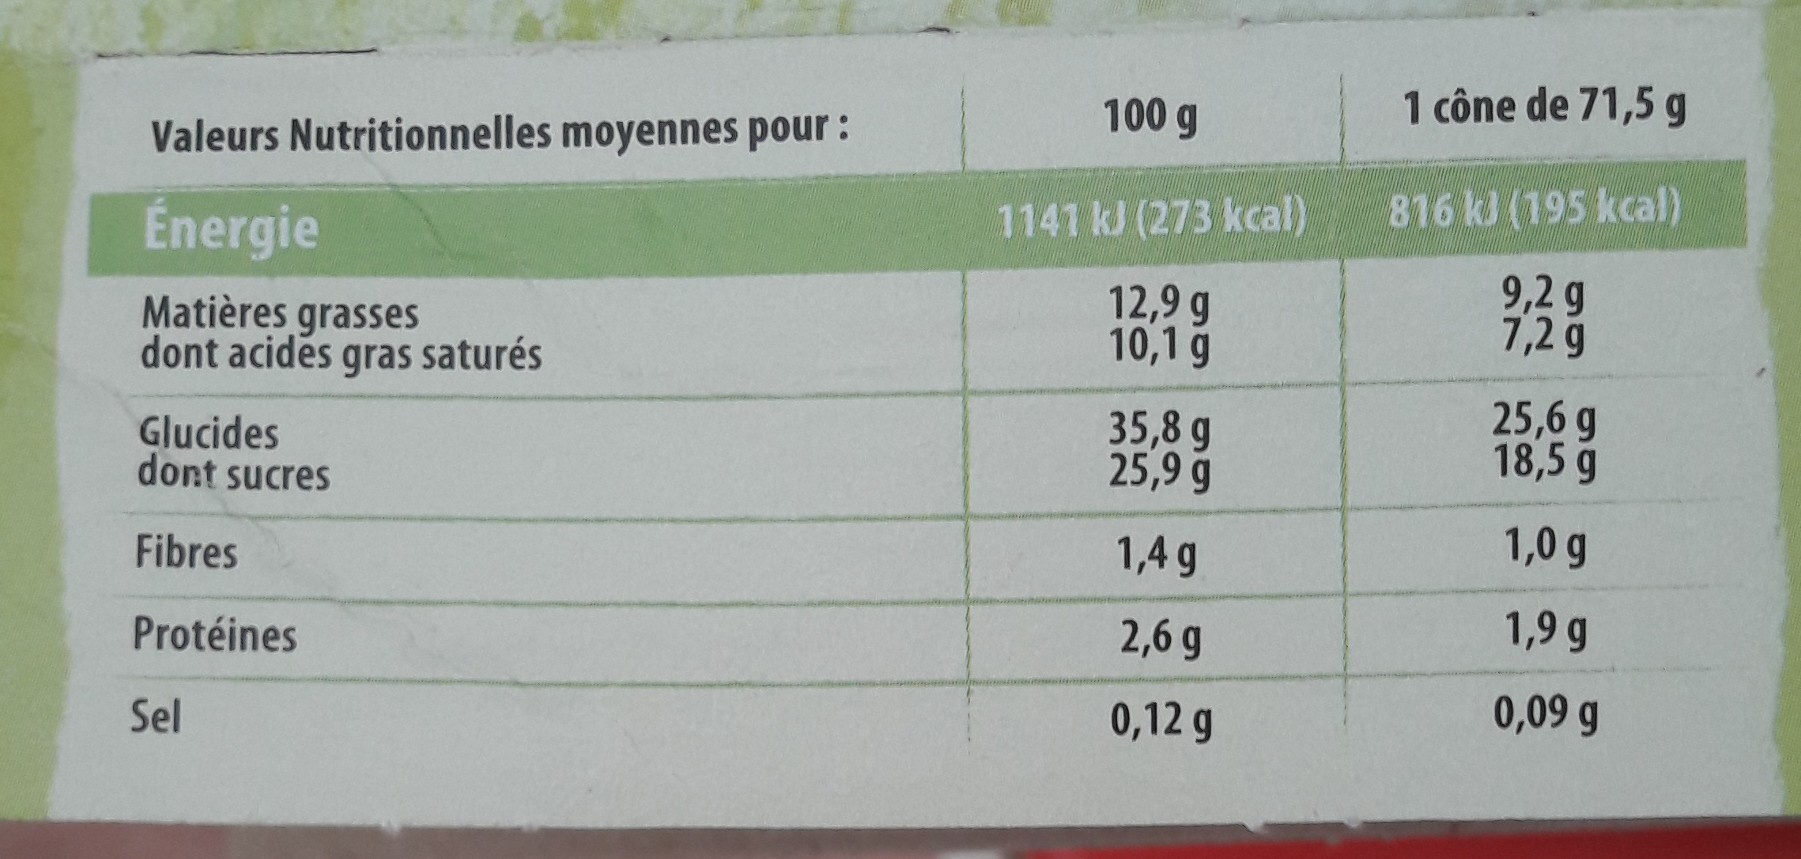 Cône Chocolat Pistache - Nutrition facts - fr